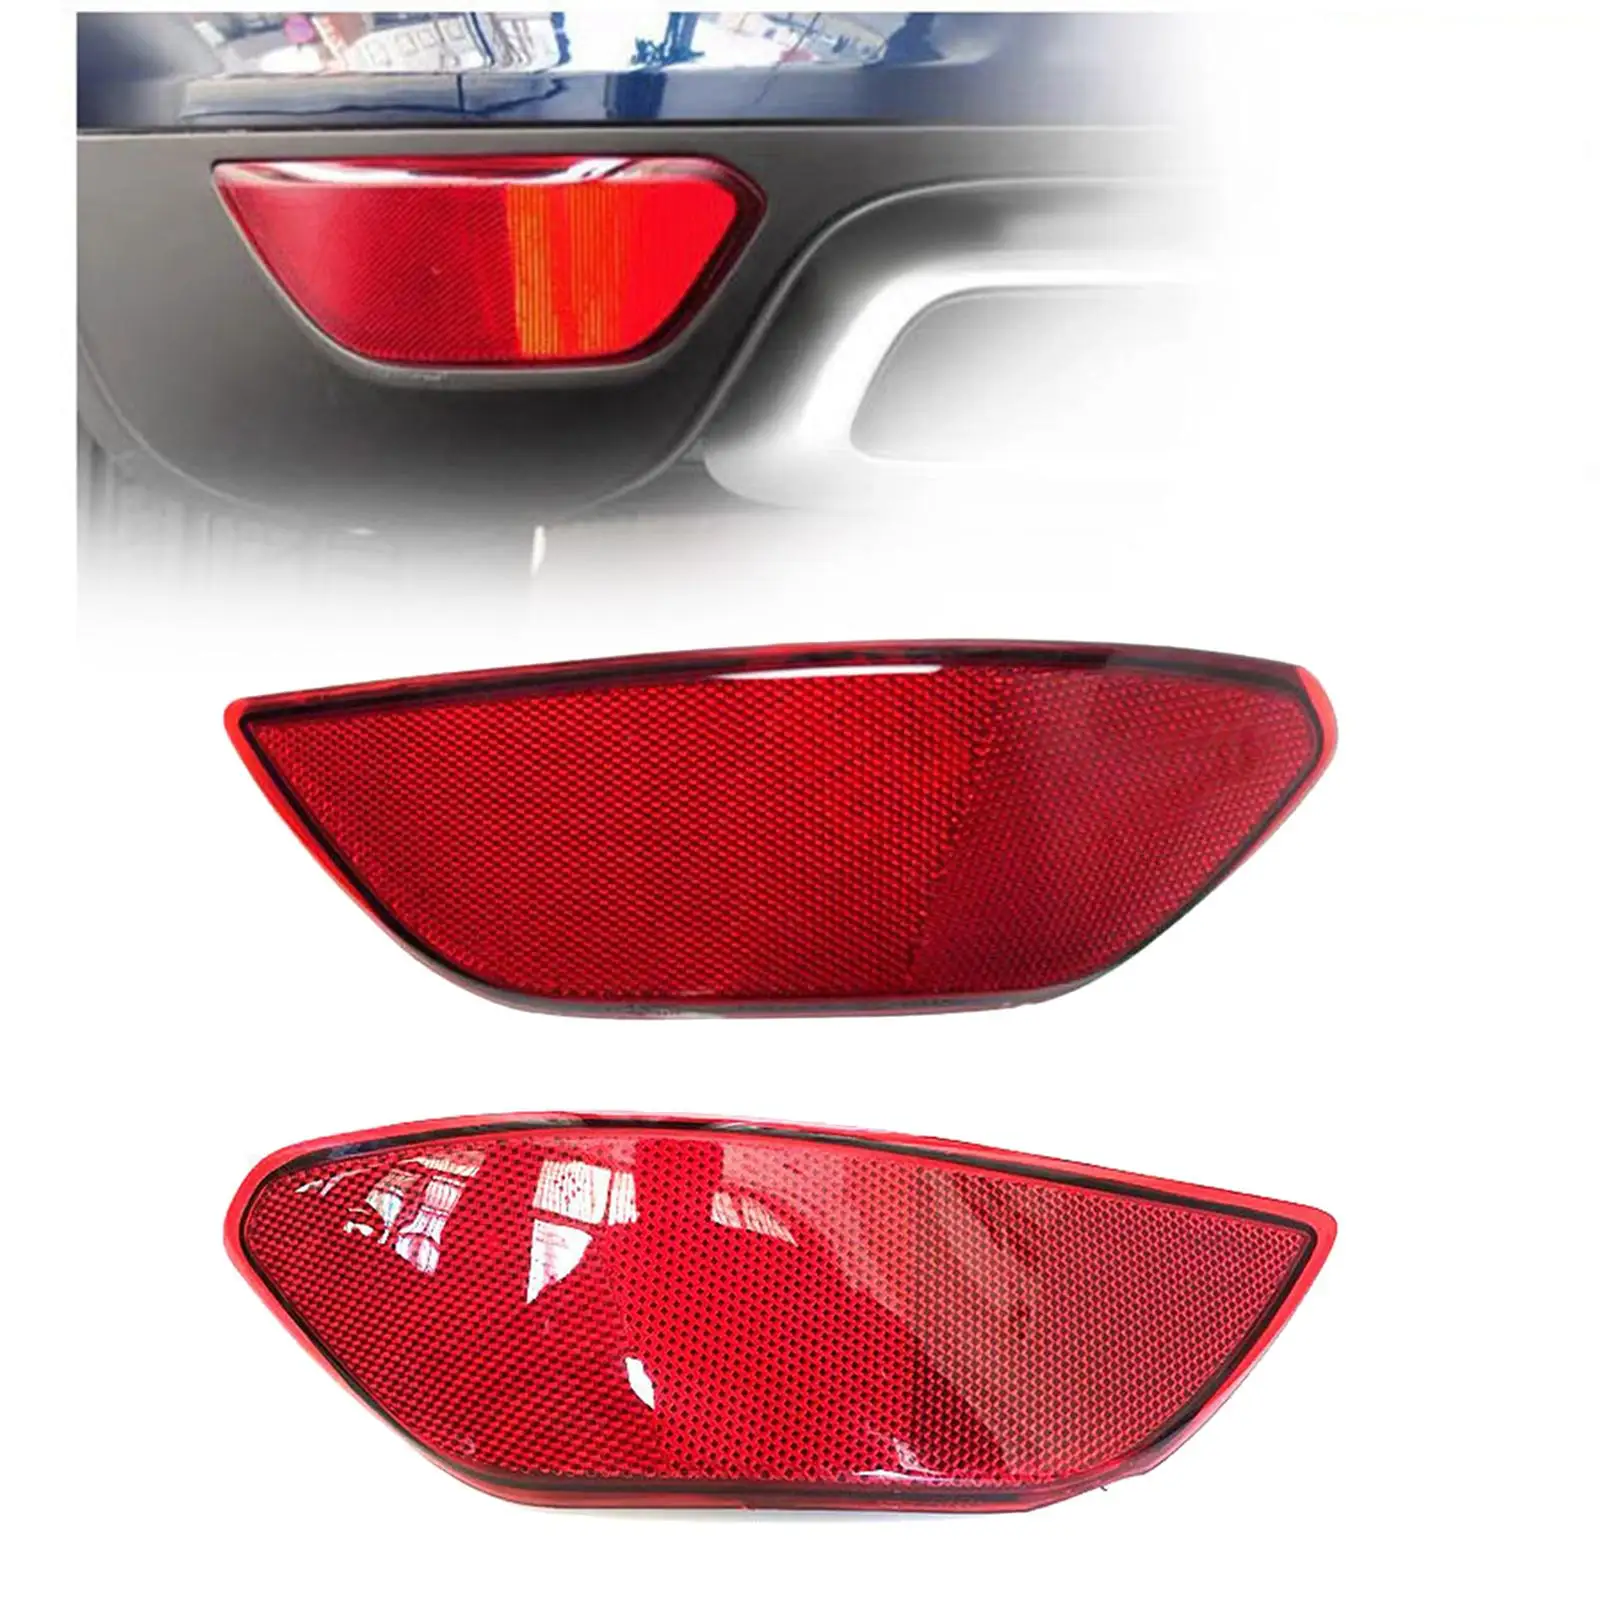 Rear Reflector for Car Rear Bumper Trim Reflector Lights Red Rear Bumper Reflector for Porsche Cayenne Car Accessory